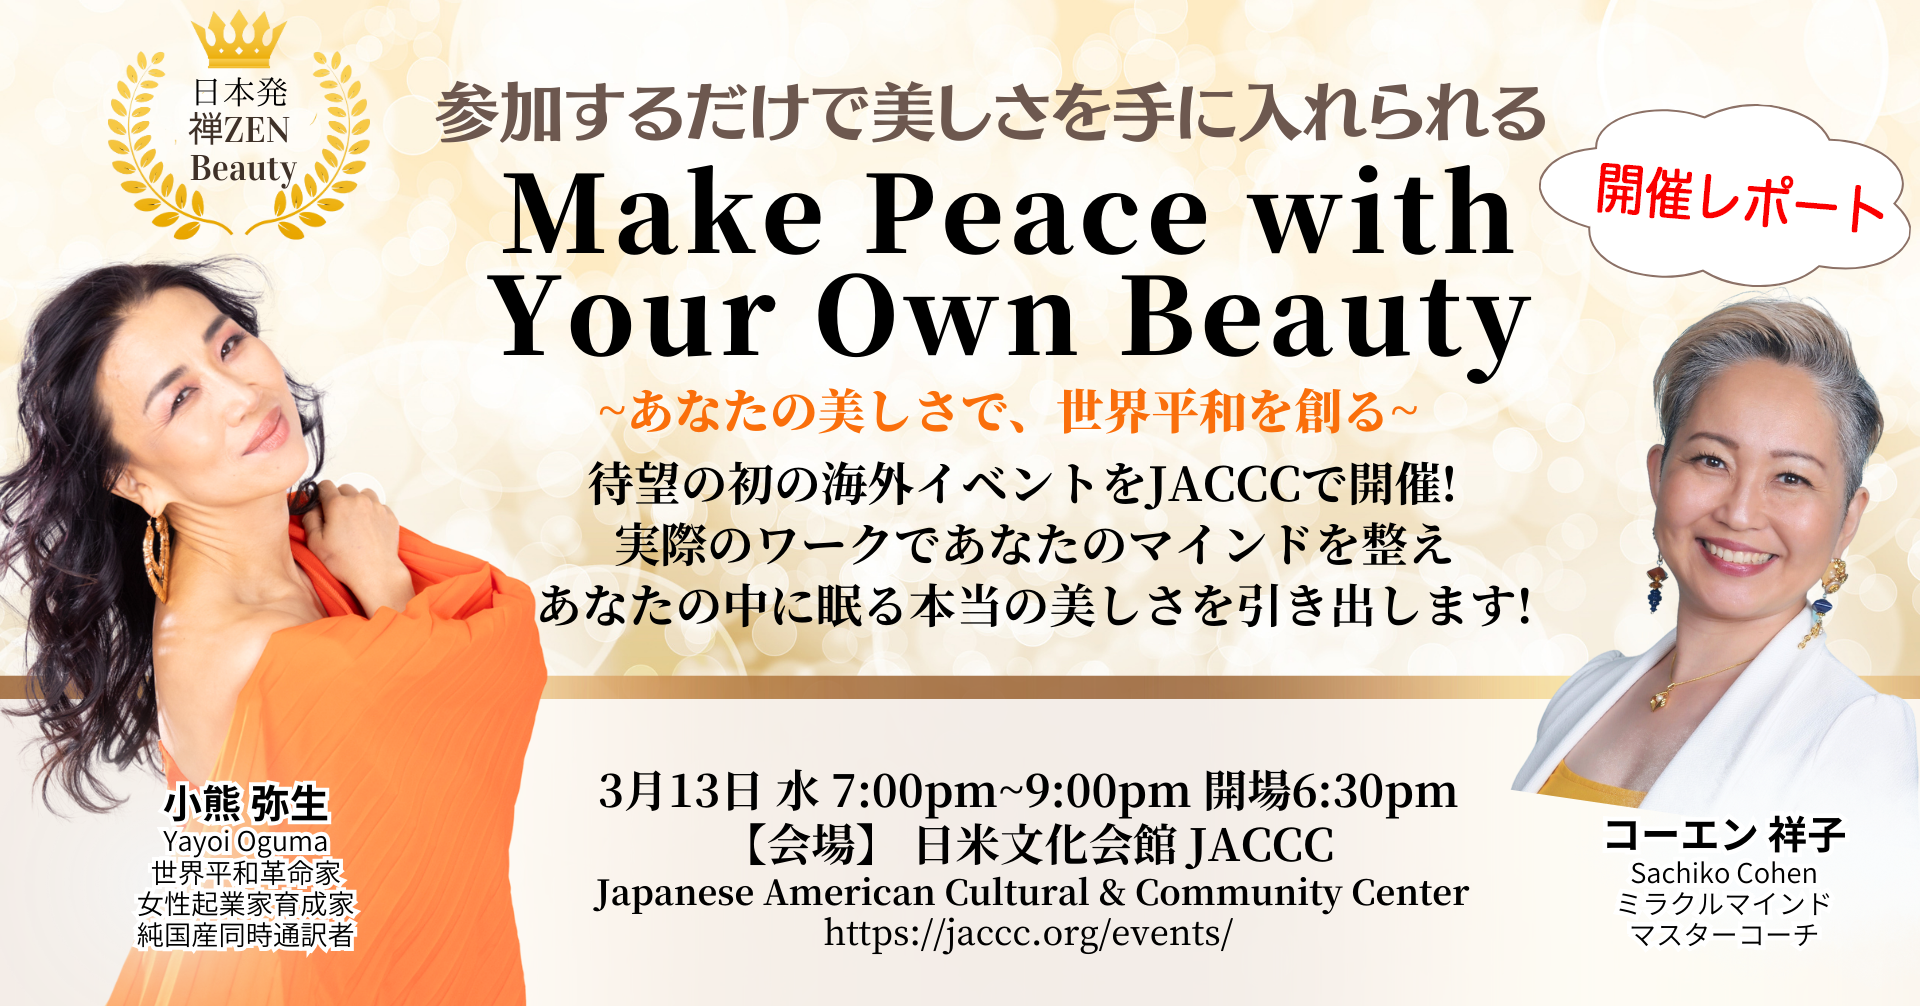 ＜開催レポート＞LAで初の海外イベント
『Make Peace with Your Own Beauty』を3月14日に開催、
オンラインで世界に発信